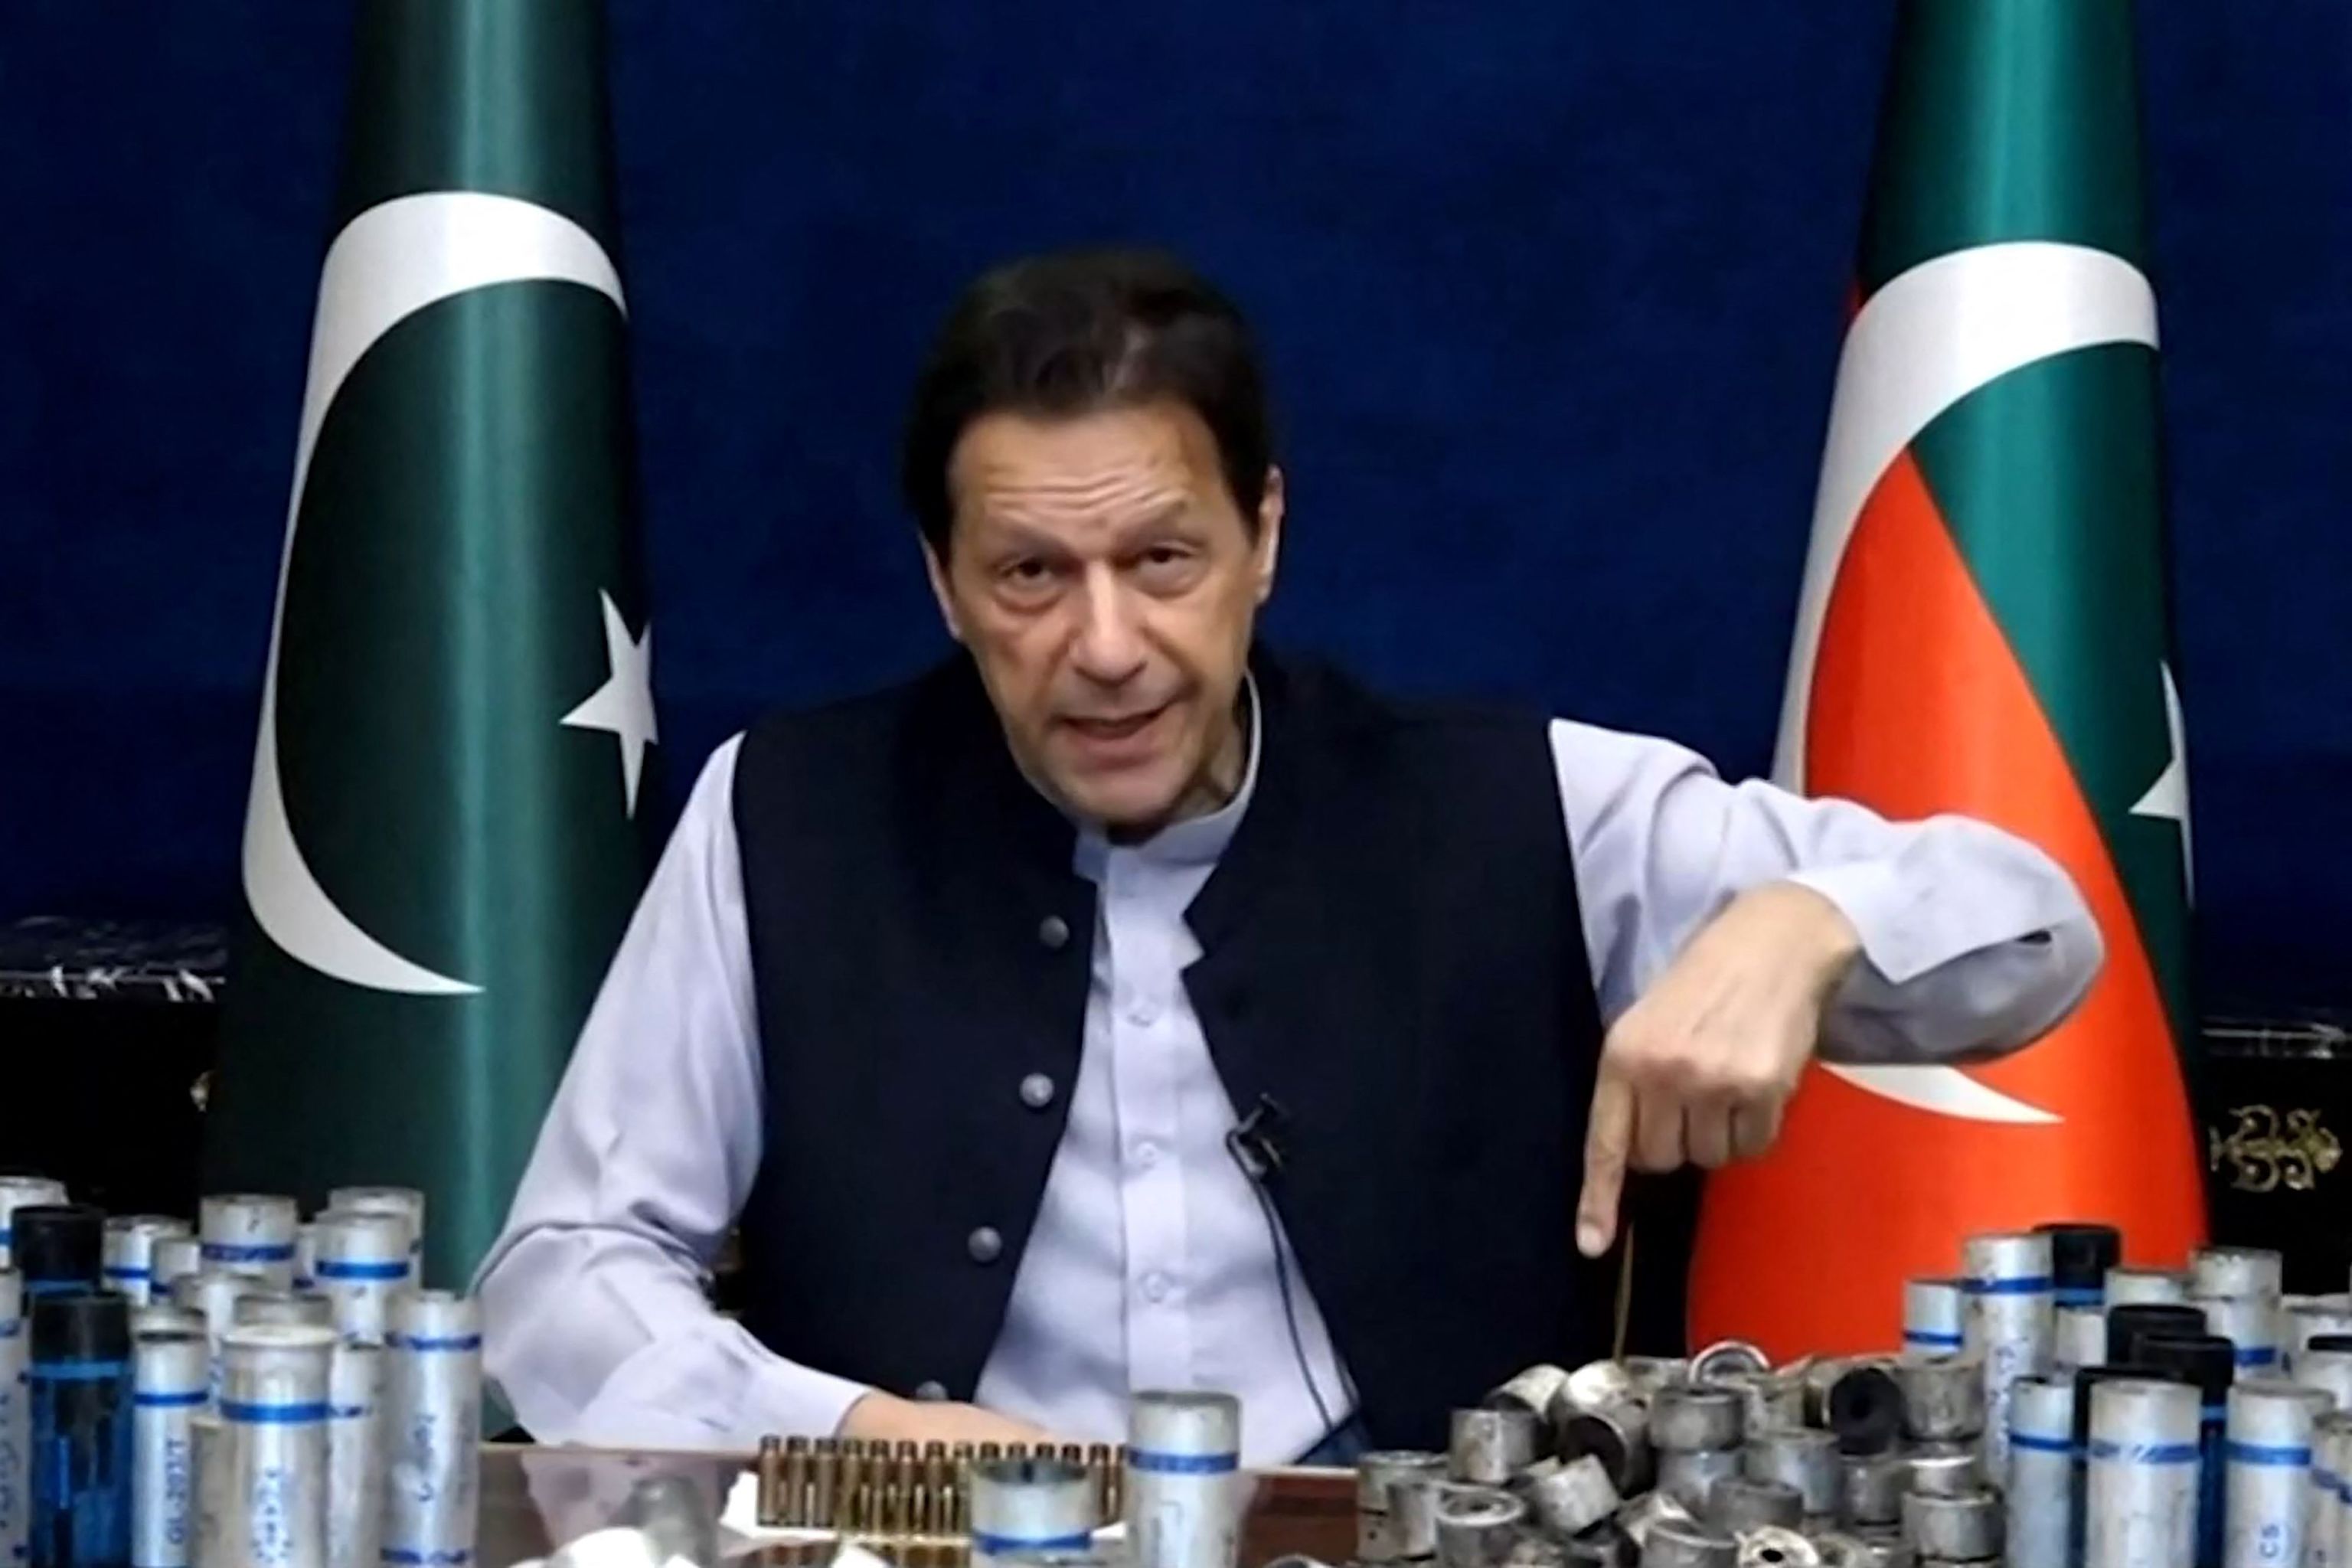 Khan muestra contenedores de gas lacrimógeno en uno de sus vídeos.